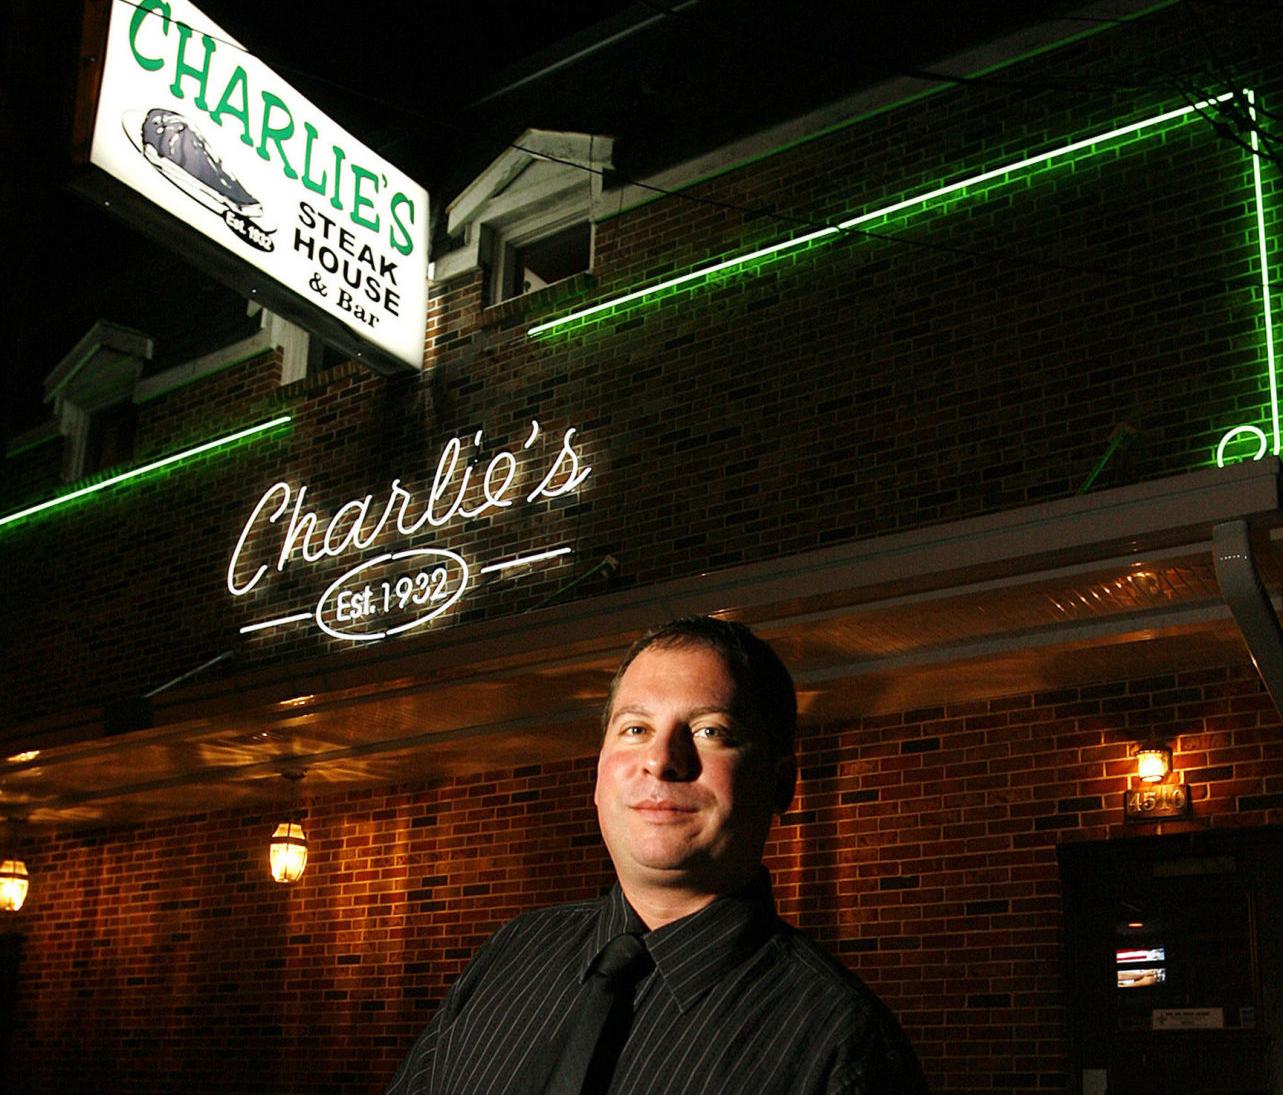 bartender, der genoplivet elskede nye Orleans restaurant Charlie ' s, dør på 49